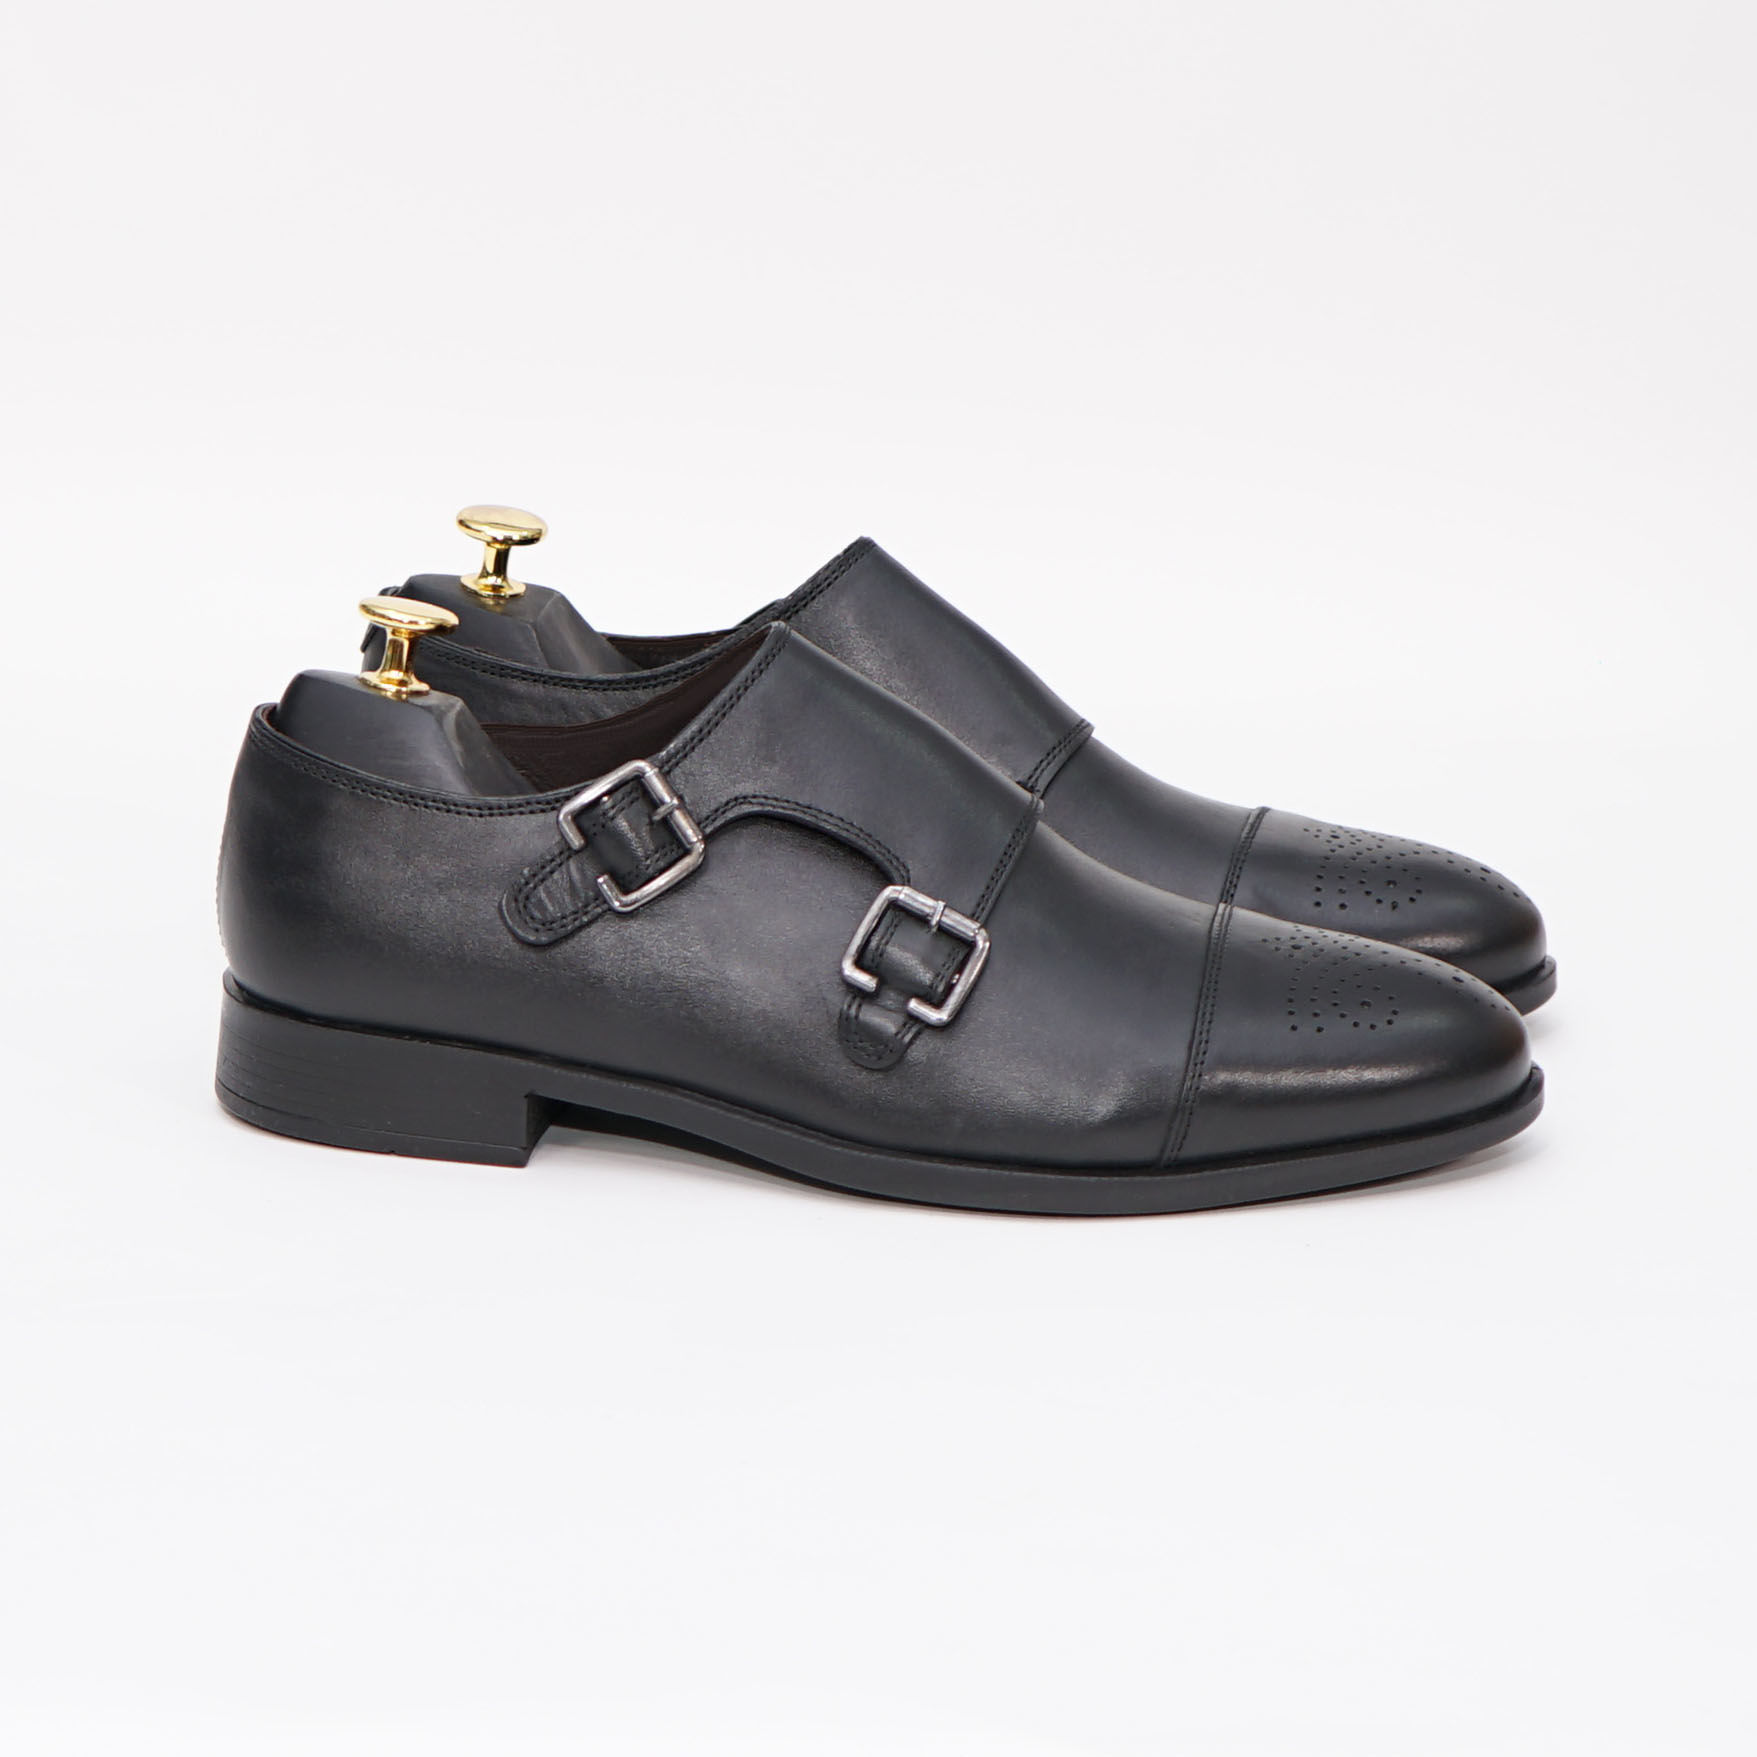 Imagine Pantofi eleganți bărbați din piele naturală 352 negru